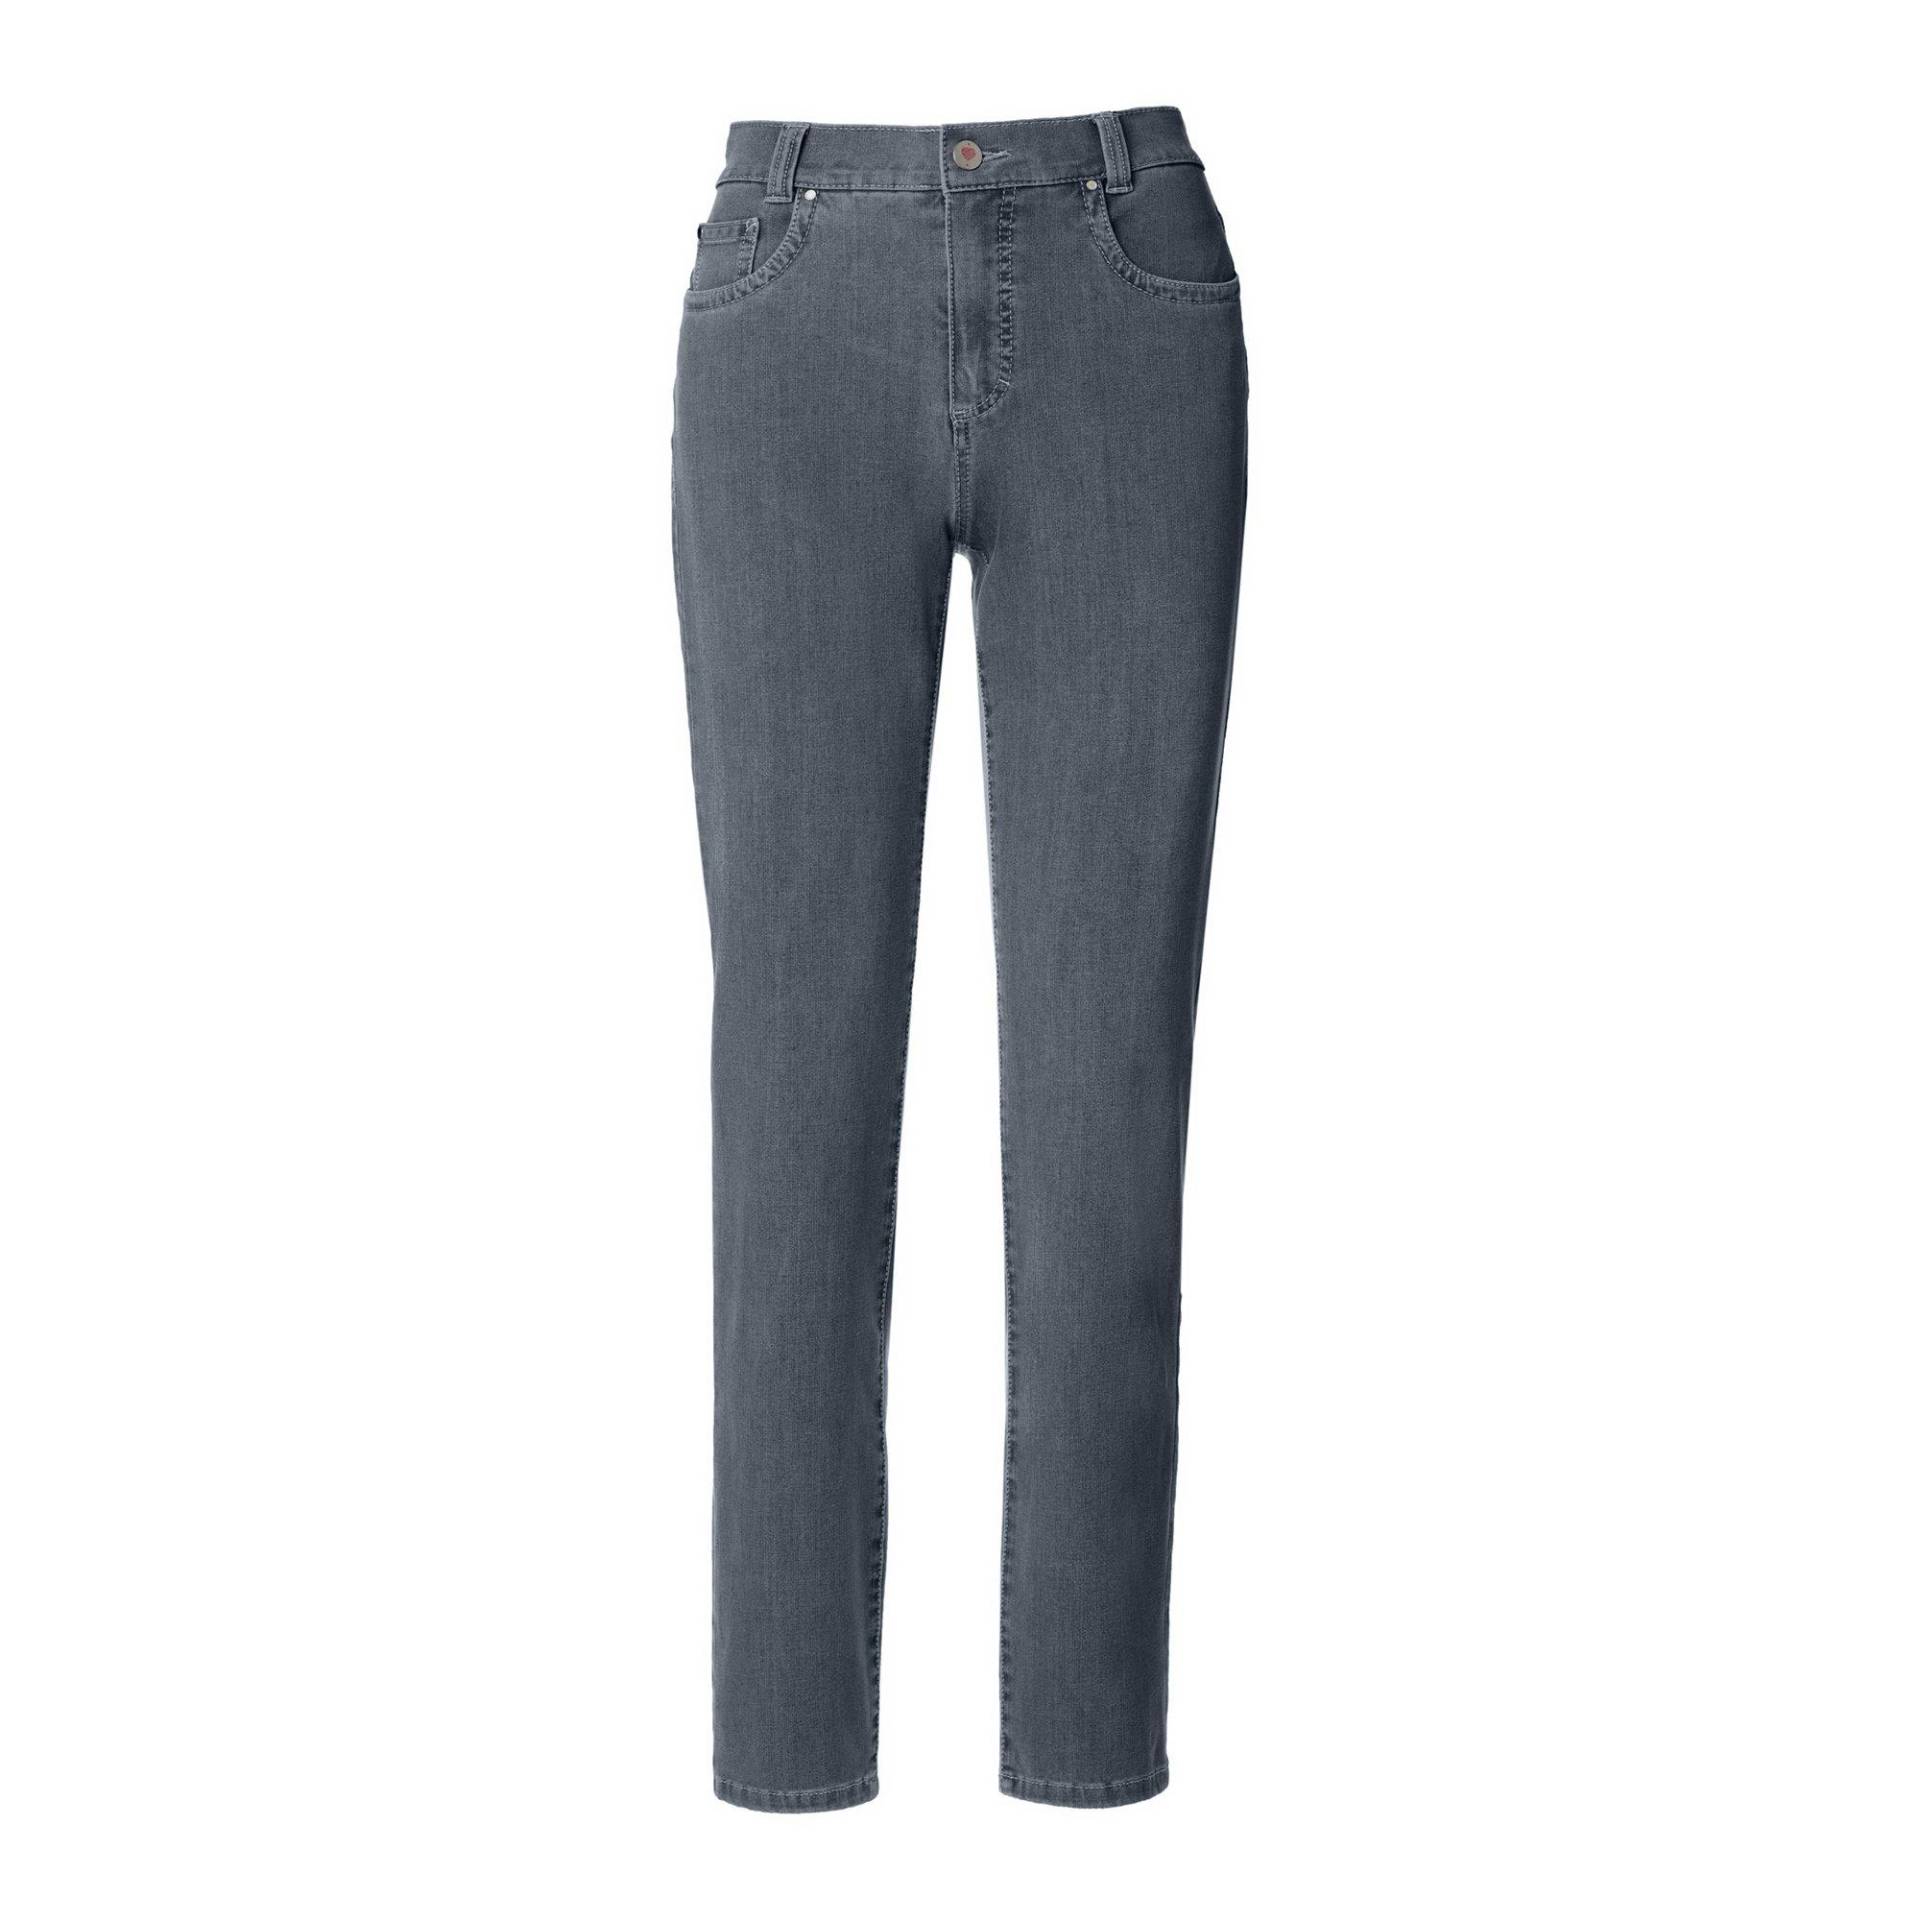 Jeans, Slim Fit Damen Blau Denim Dunkel W38 von ANNA MONTANA